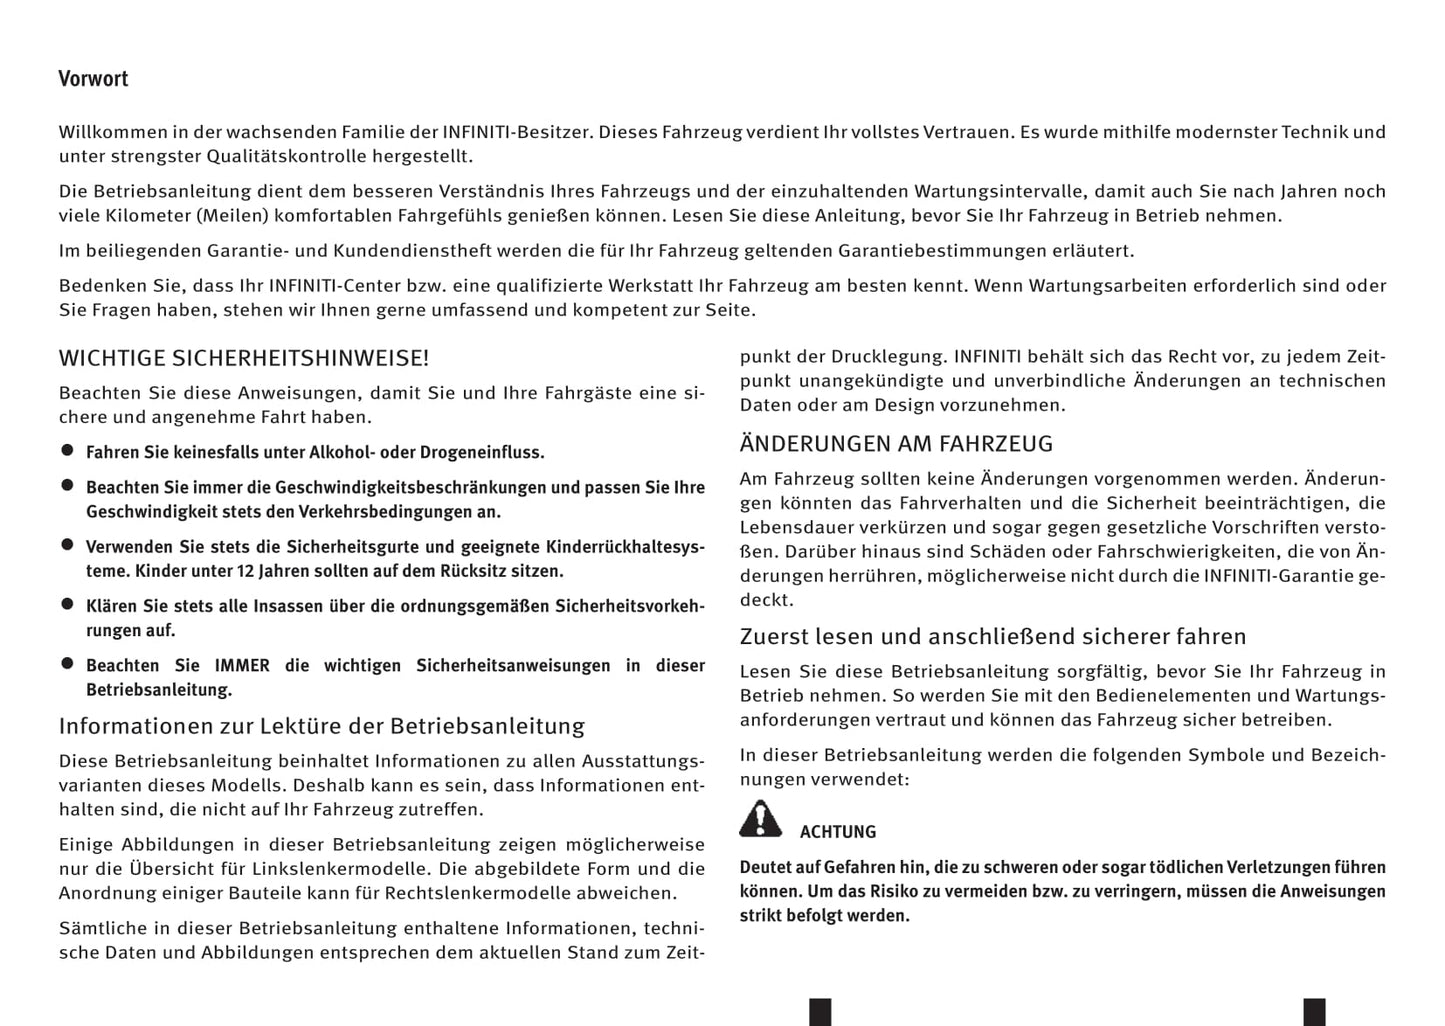 2016-2017 Infiniti Q60 Owner's Manual | German